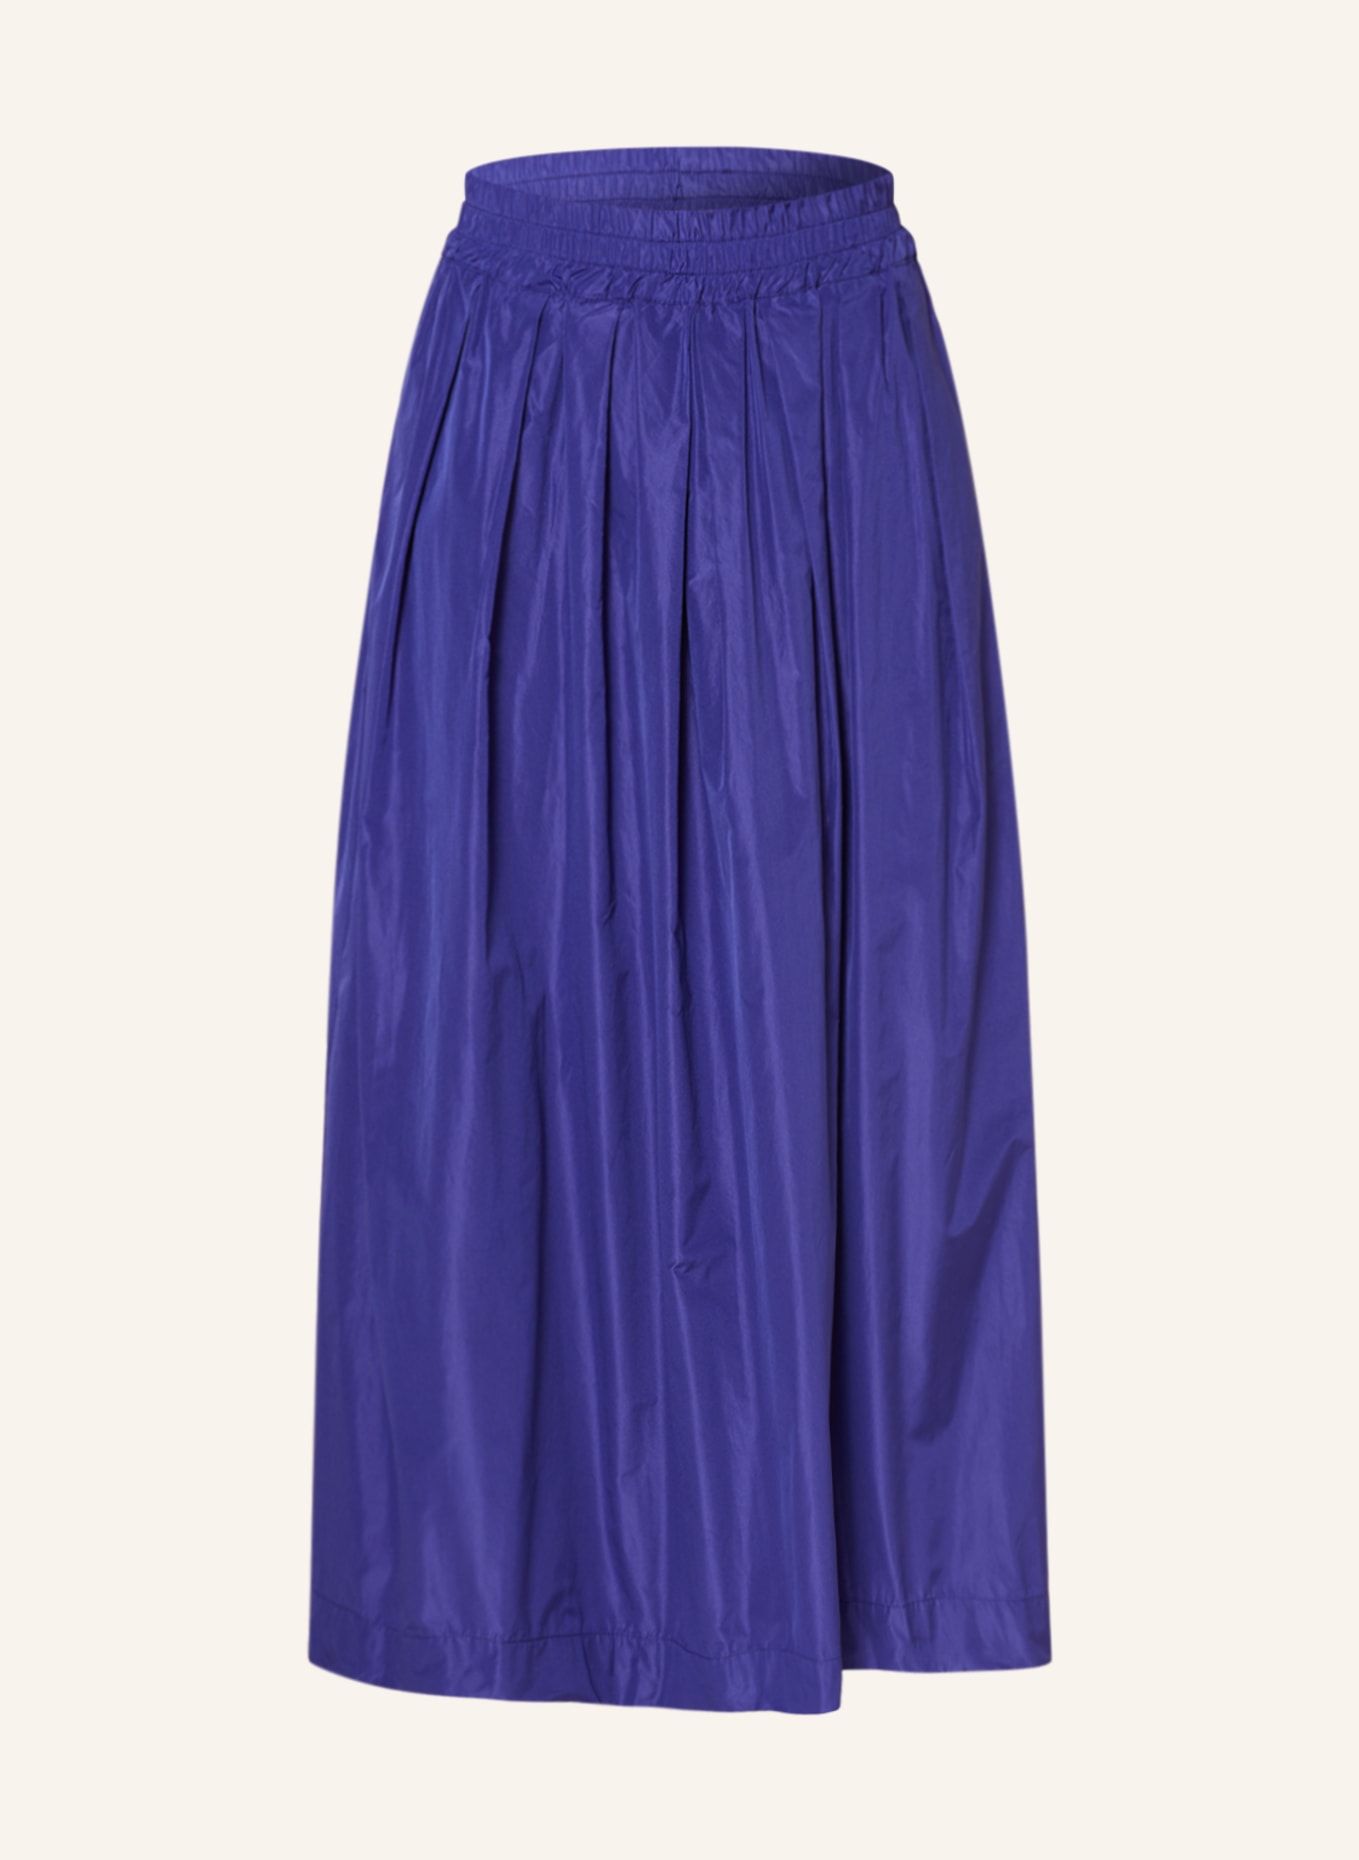 lilienfels Skirt, Color: PURPLE (Image 1)